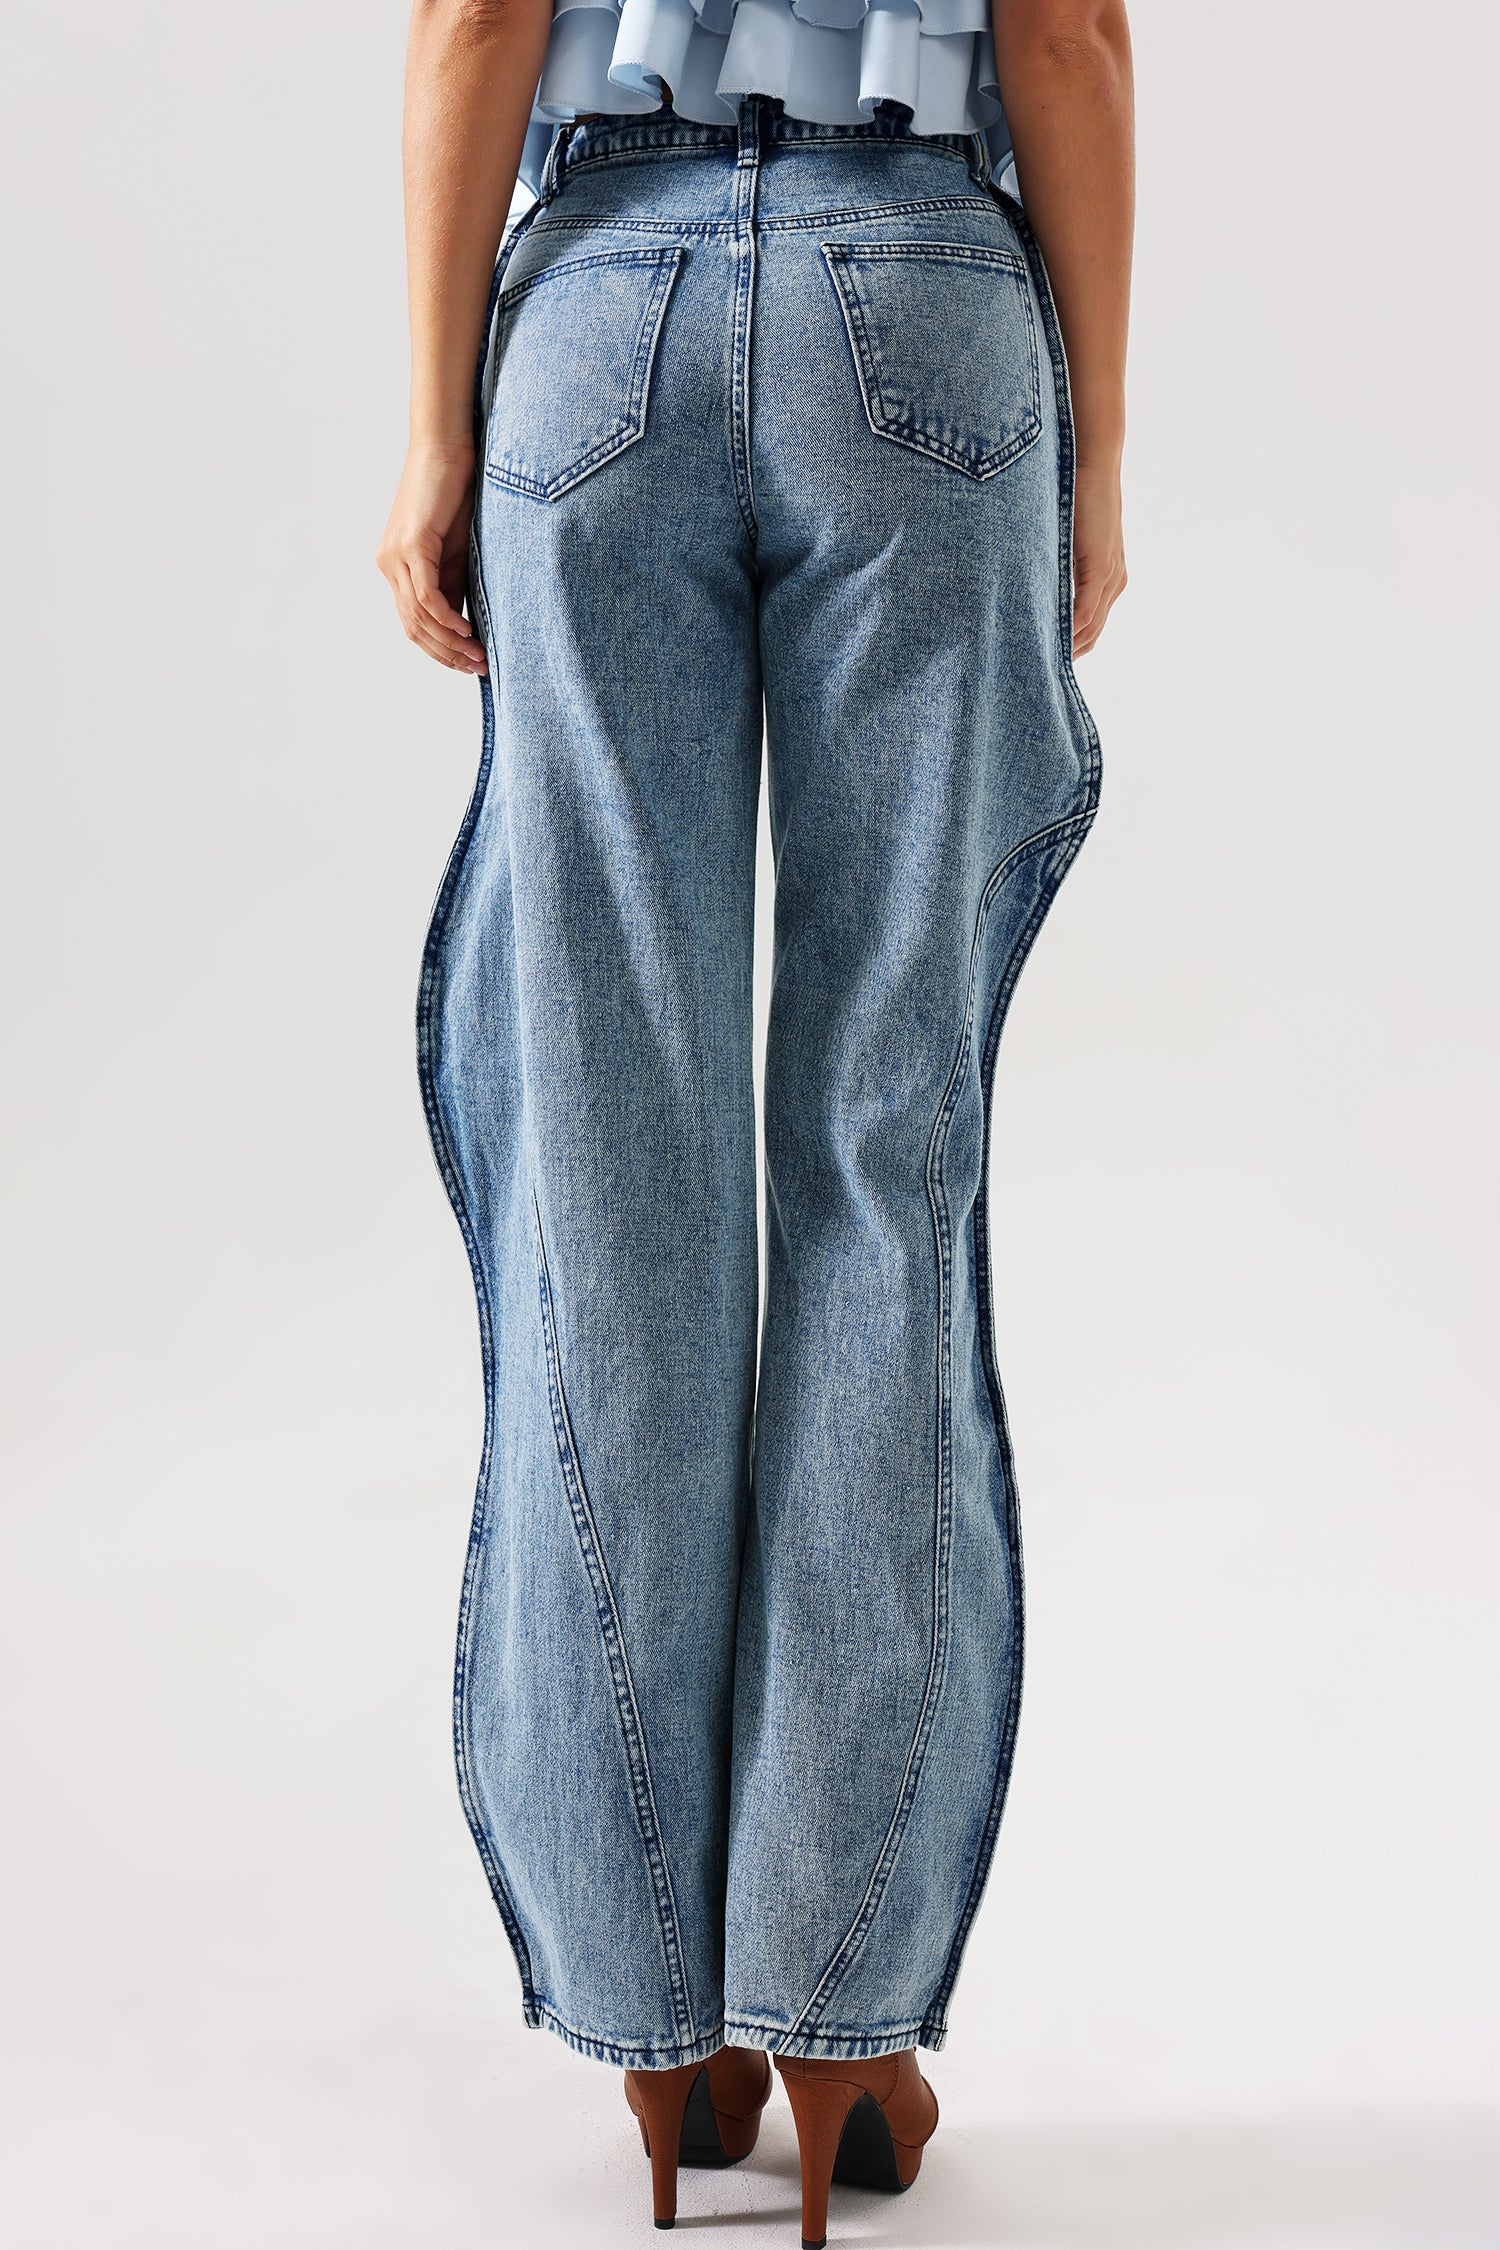 Kuller Asymmetric Jeans